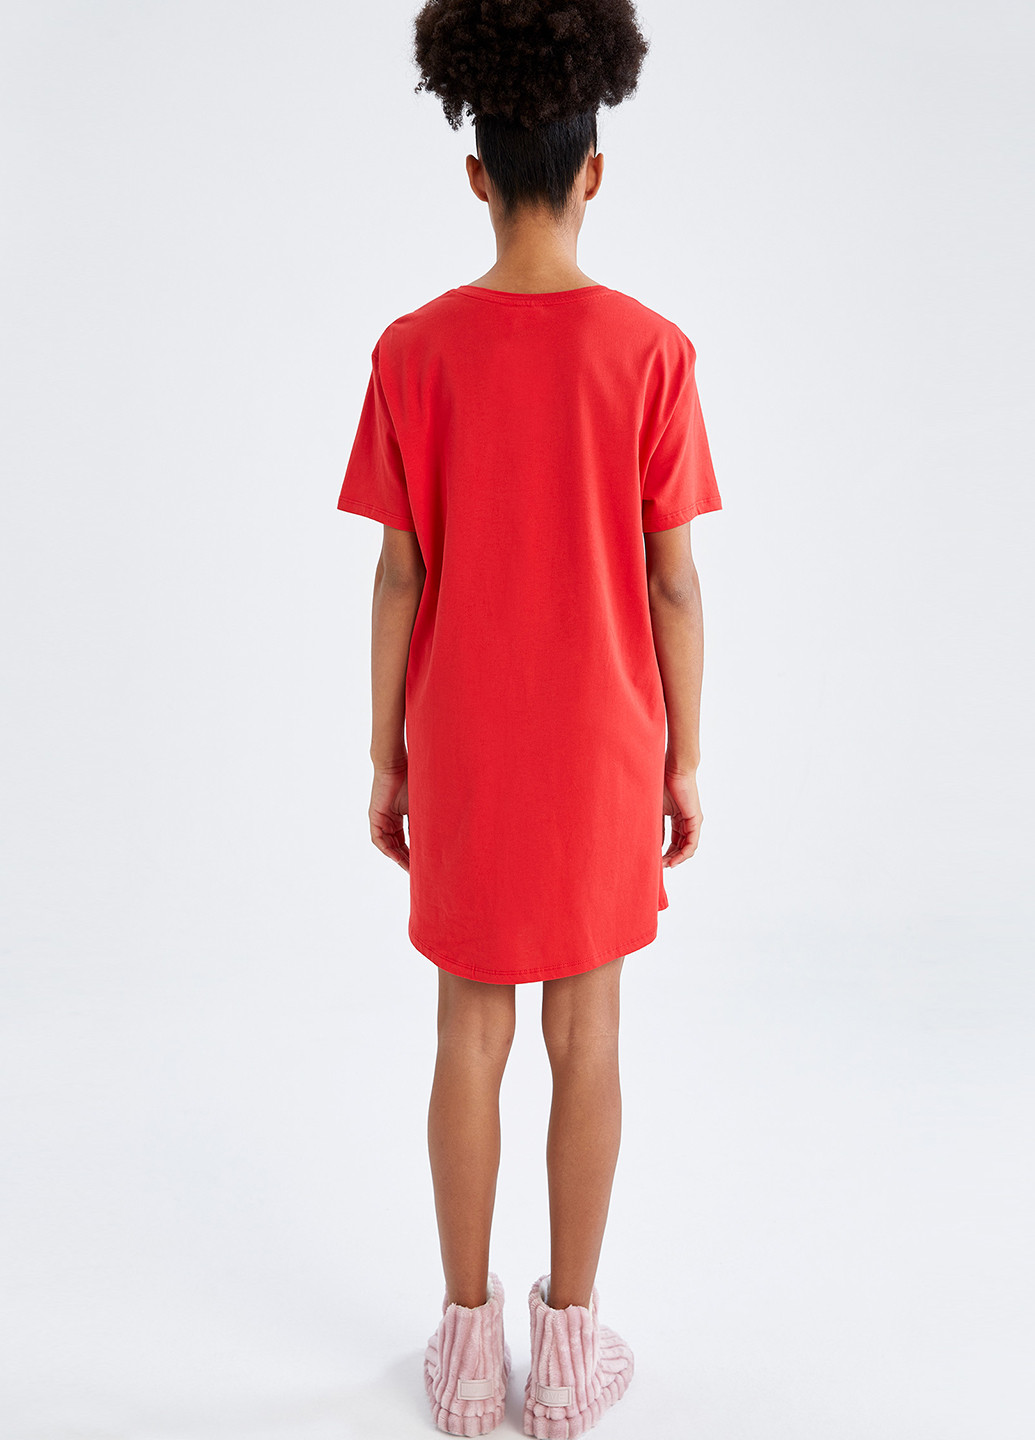 Красное домашнее платье платье-футболка DeFacto персонажи